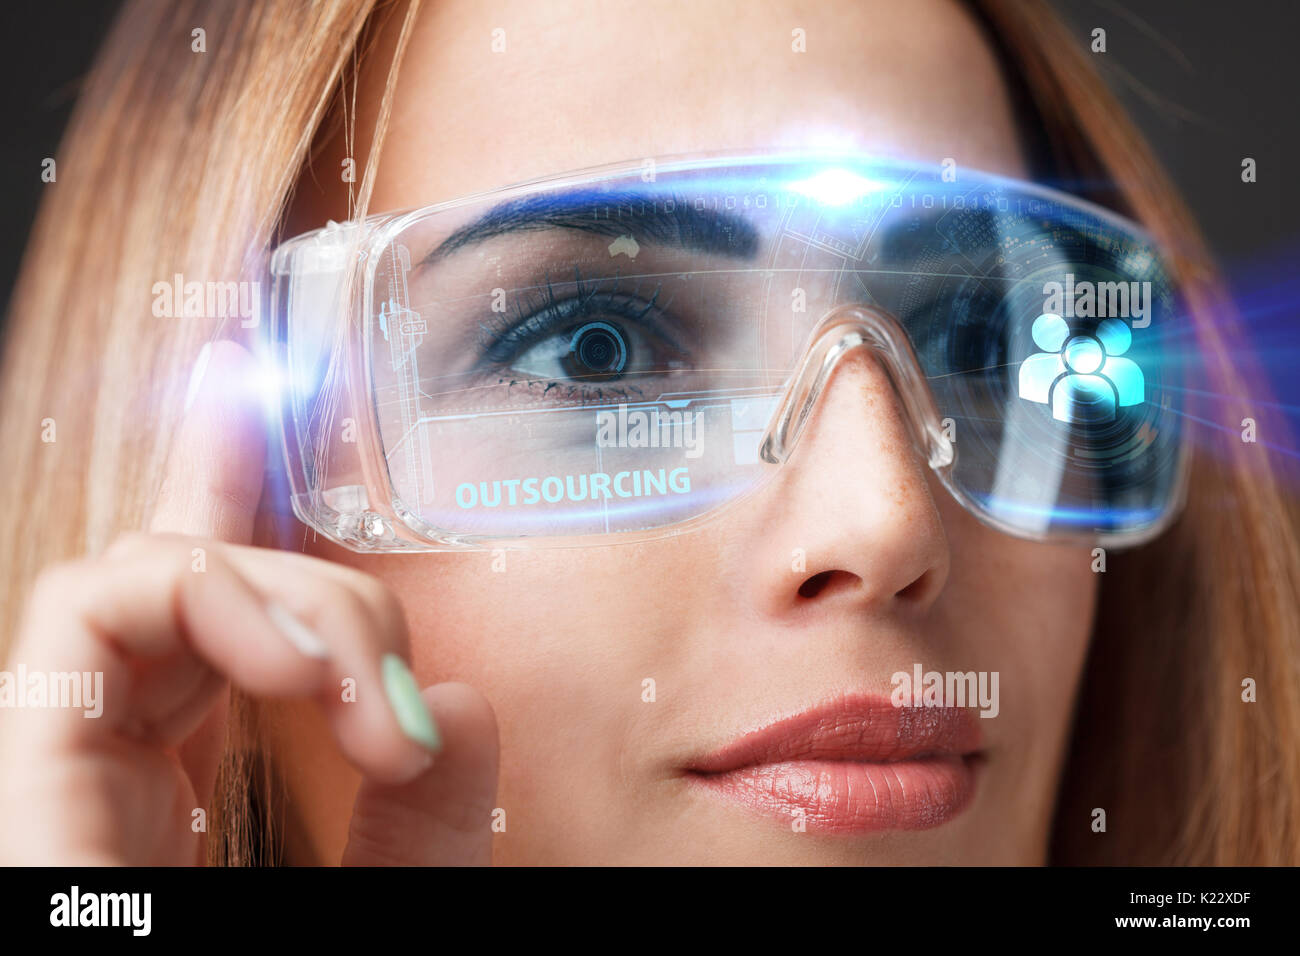 Giovane imprenditrice lavorando in bicchieri virtuale, selezionare l'icona outsourcing virtuale sul display. Foto Stock